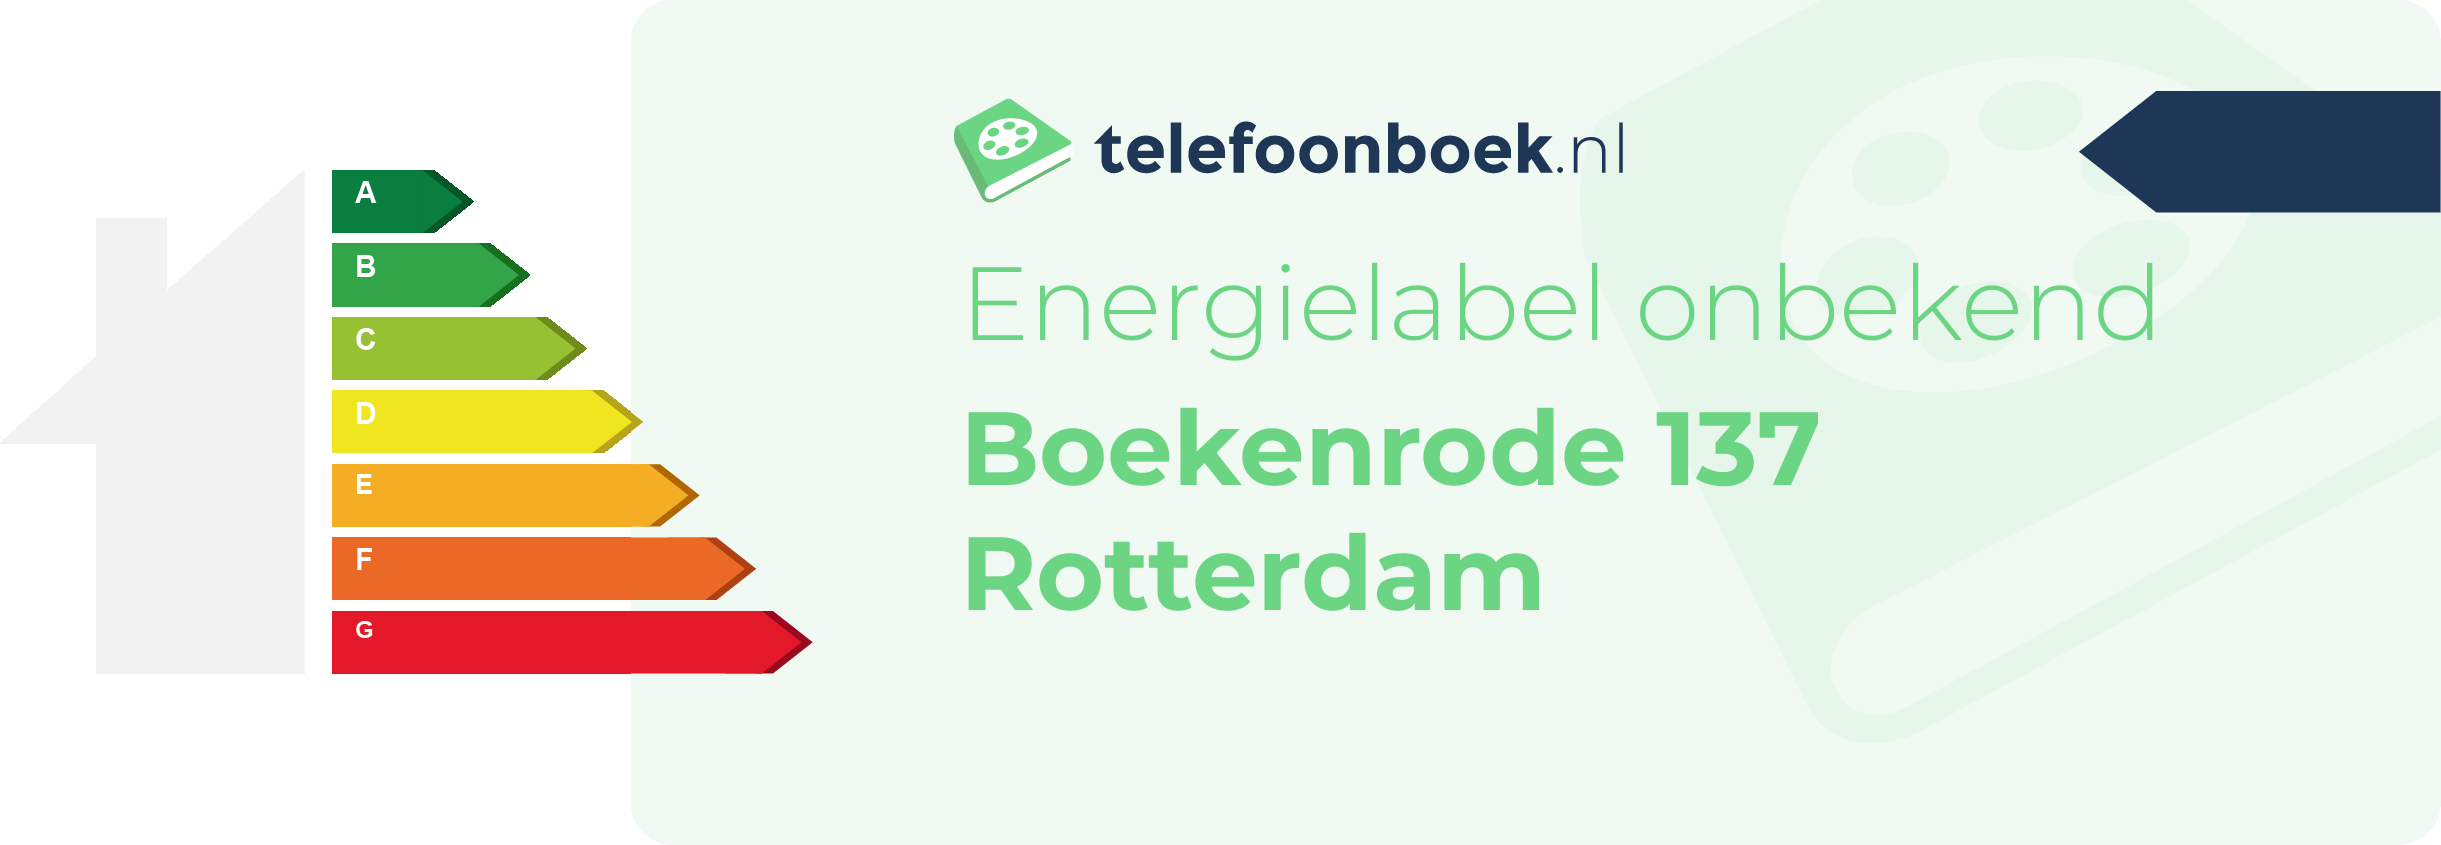 Energielabel Boekenrode 137 Rotterdam